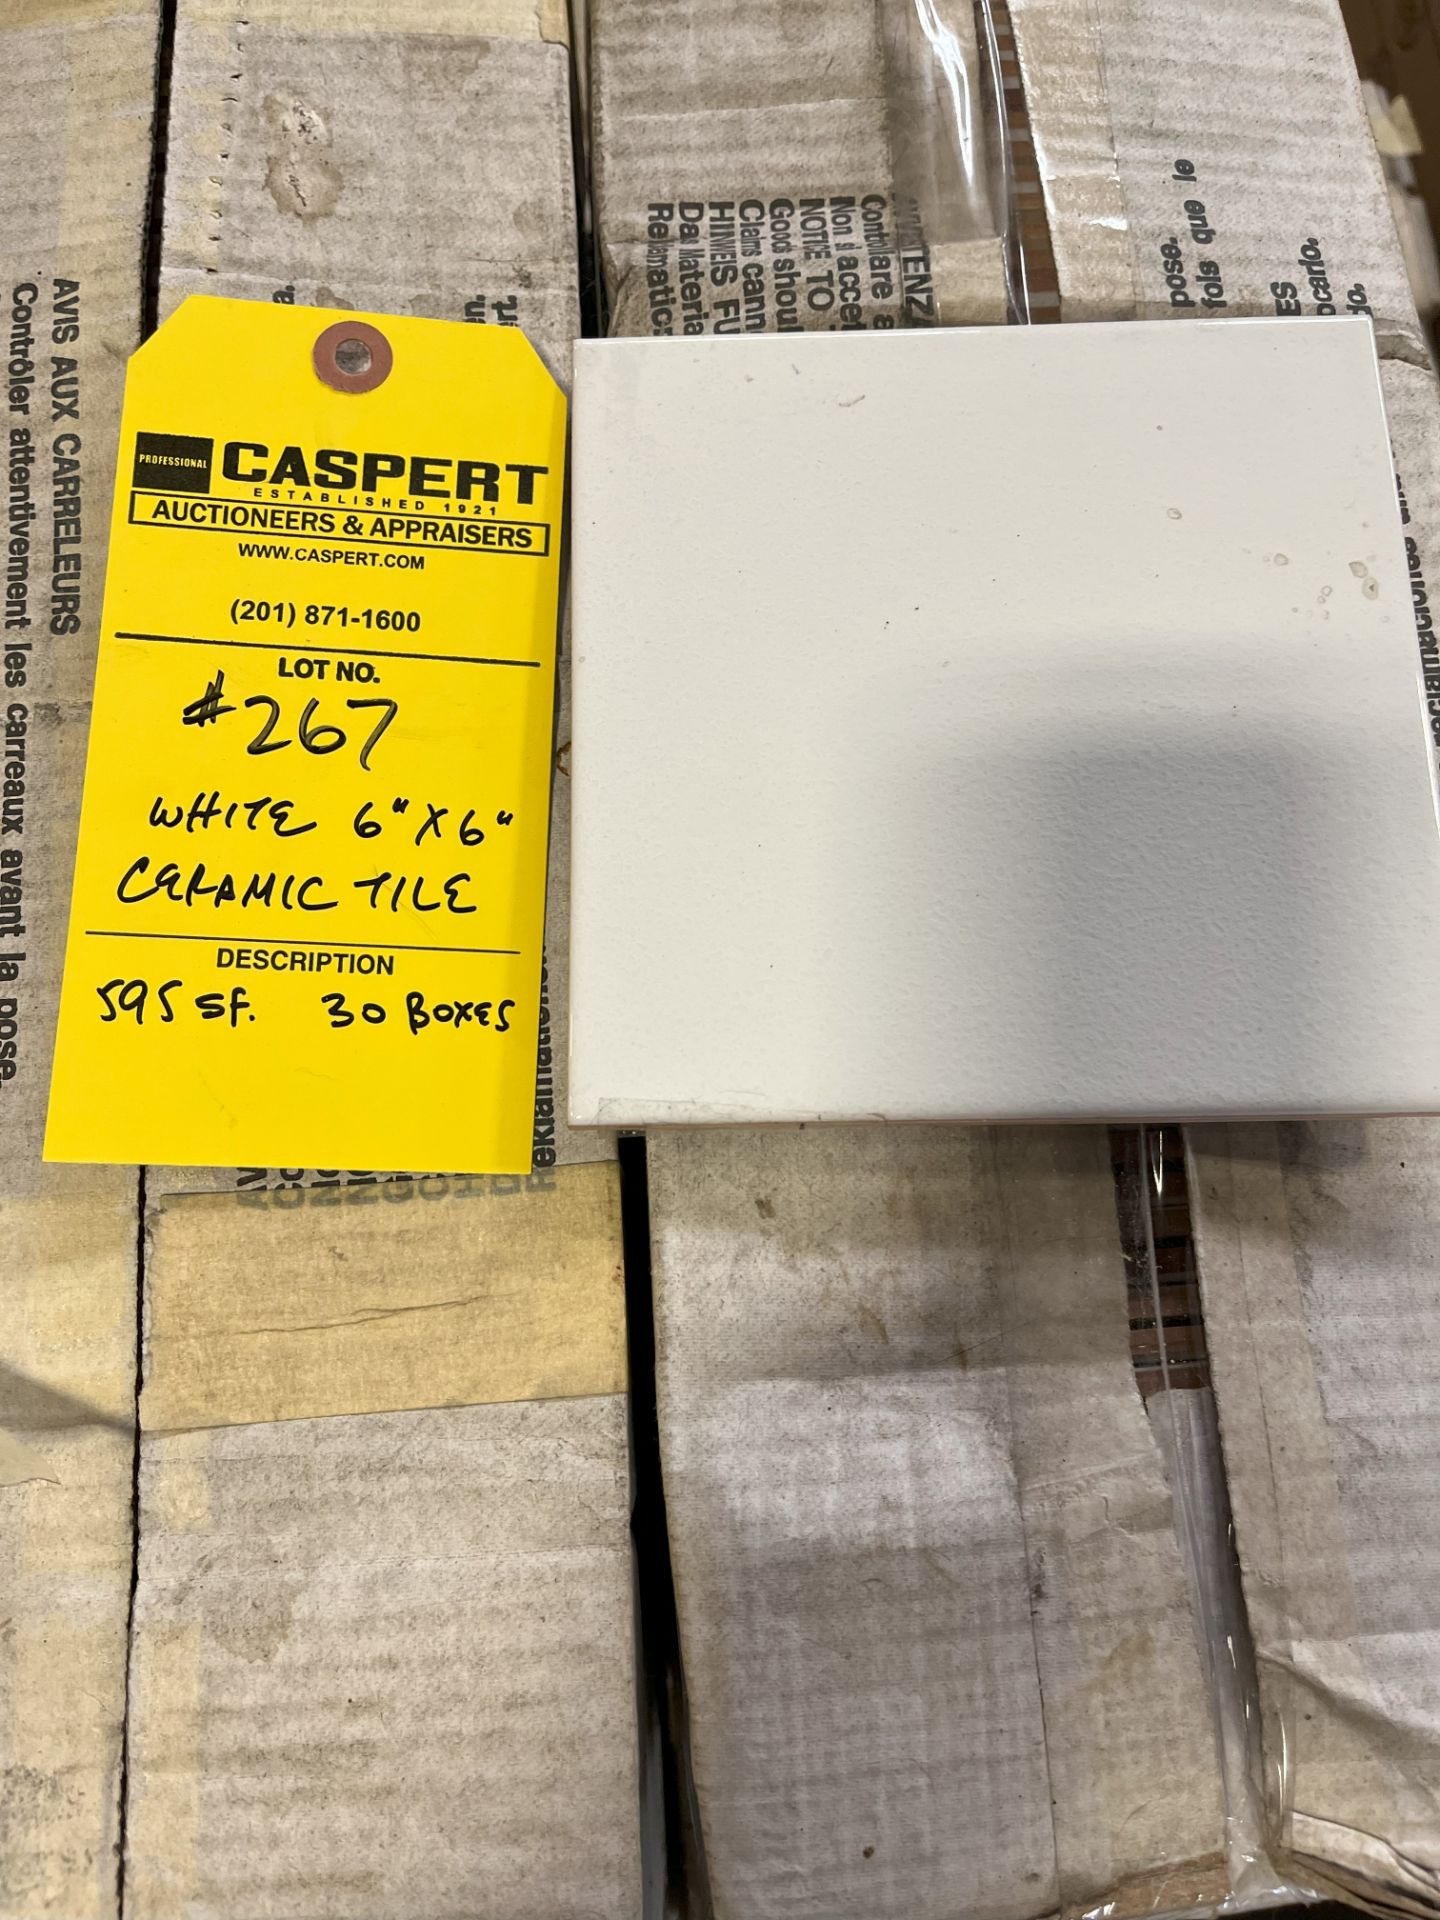 WHITE CERAMIC TILE 6" X 6" - 595 SQ FT